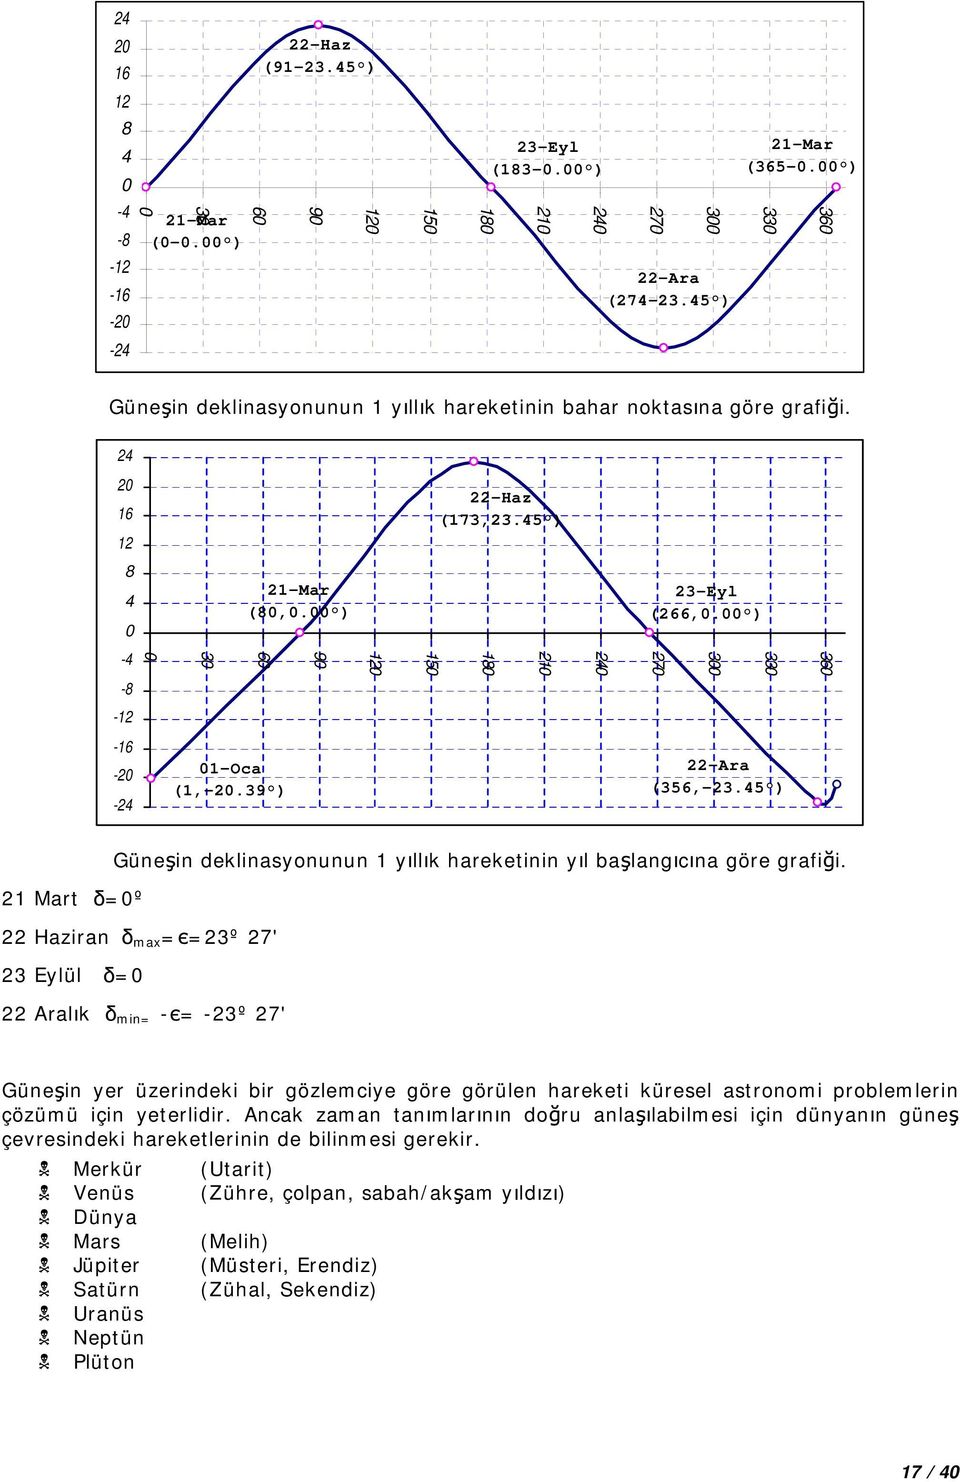 00 ) -4 0 30 60 10 150 180 10 40 70 300 330 360-8 -1-16 -0-4 01-Oca (1,-0.39 ) -Ara (356,-3.45 ) Güne in deklinasyonunun 1 y ll k harekeinin y l ba lang c na göre grafi i.